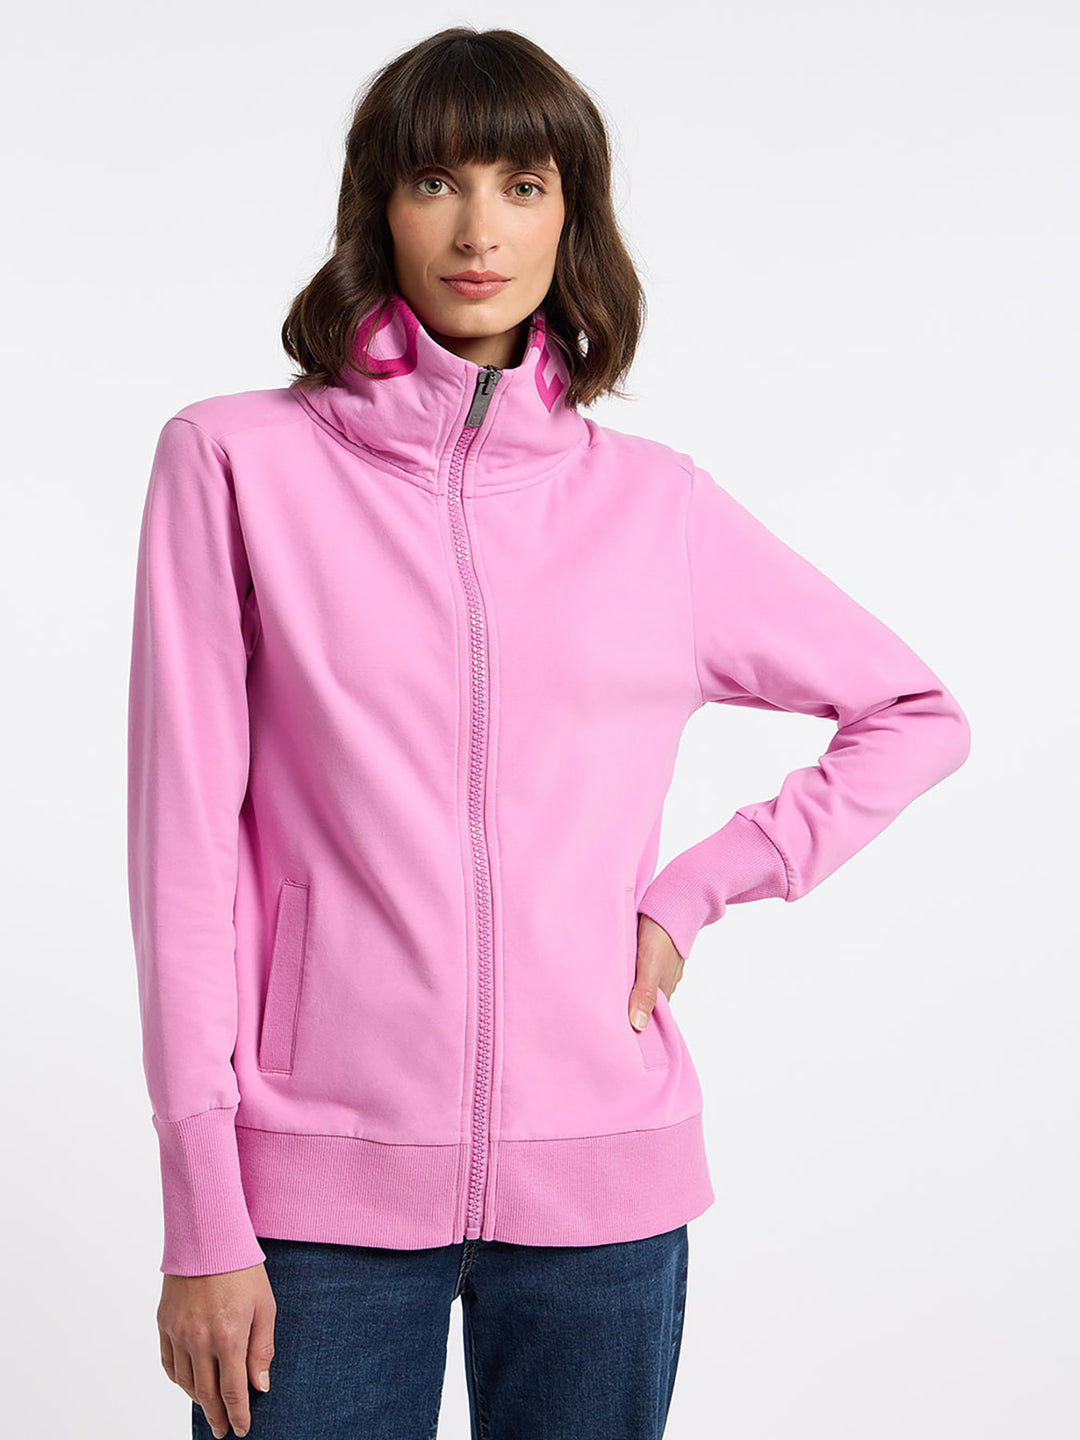 Mauve Elbsand Modafein Pink – Fashion bei Alvis erhältlich Modafein Sweatjacke